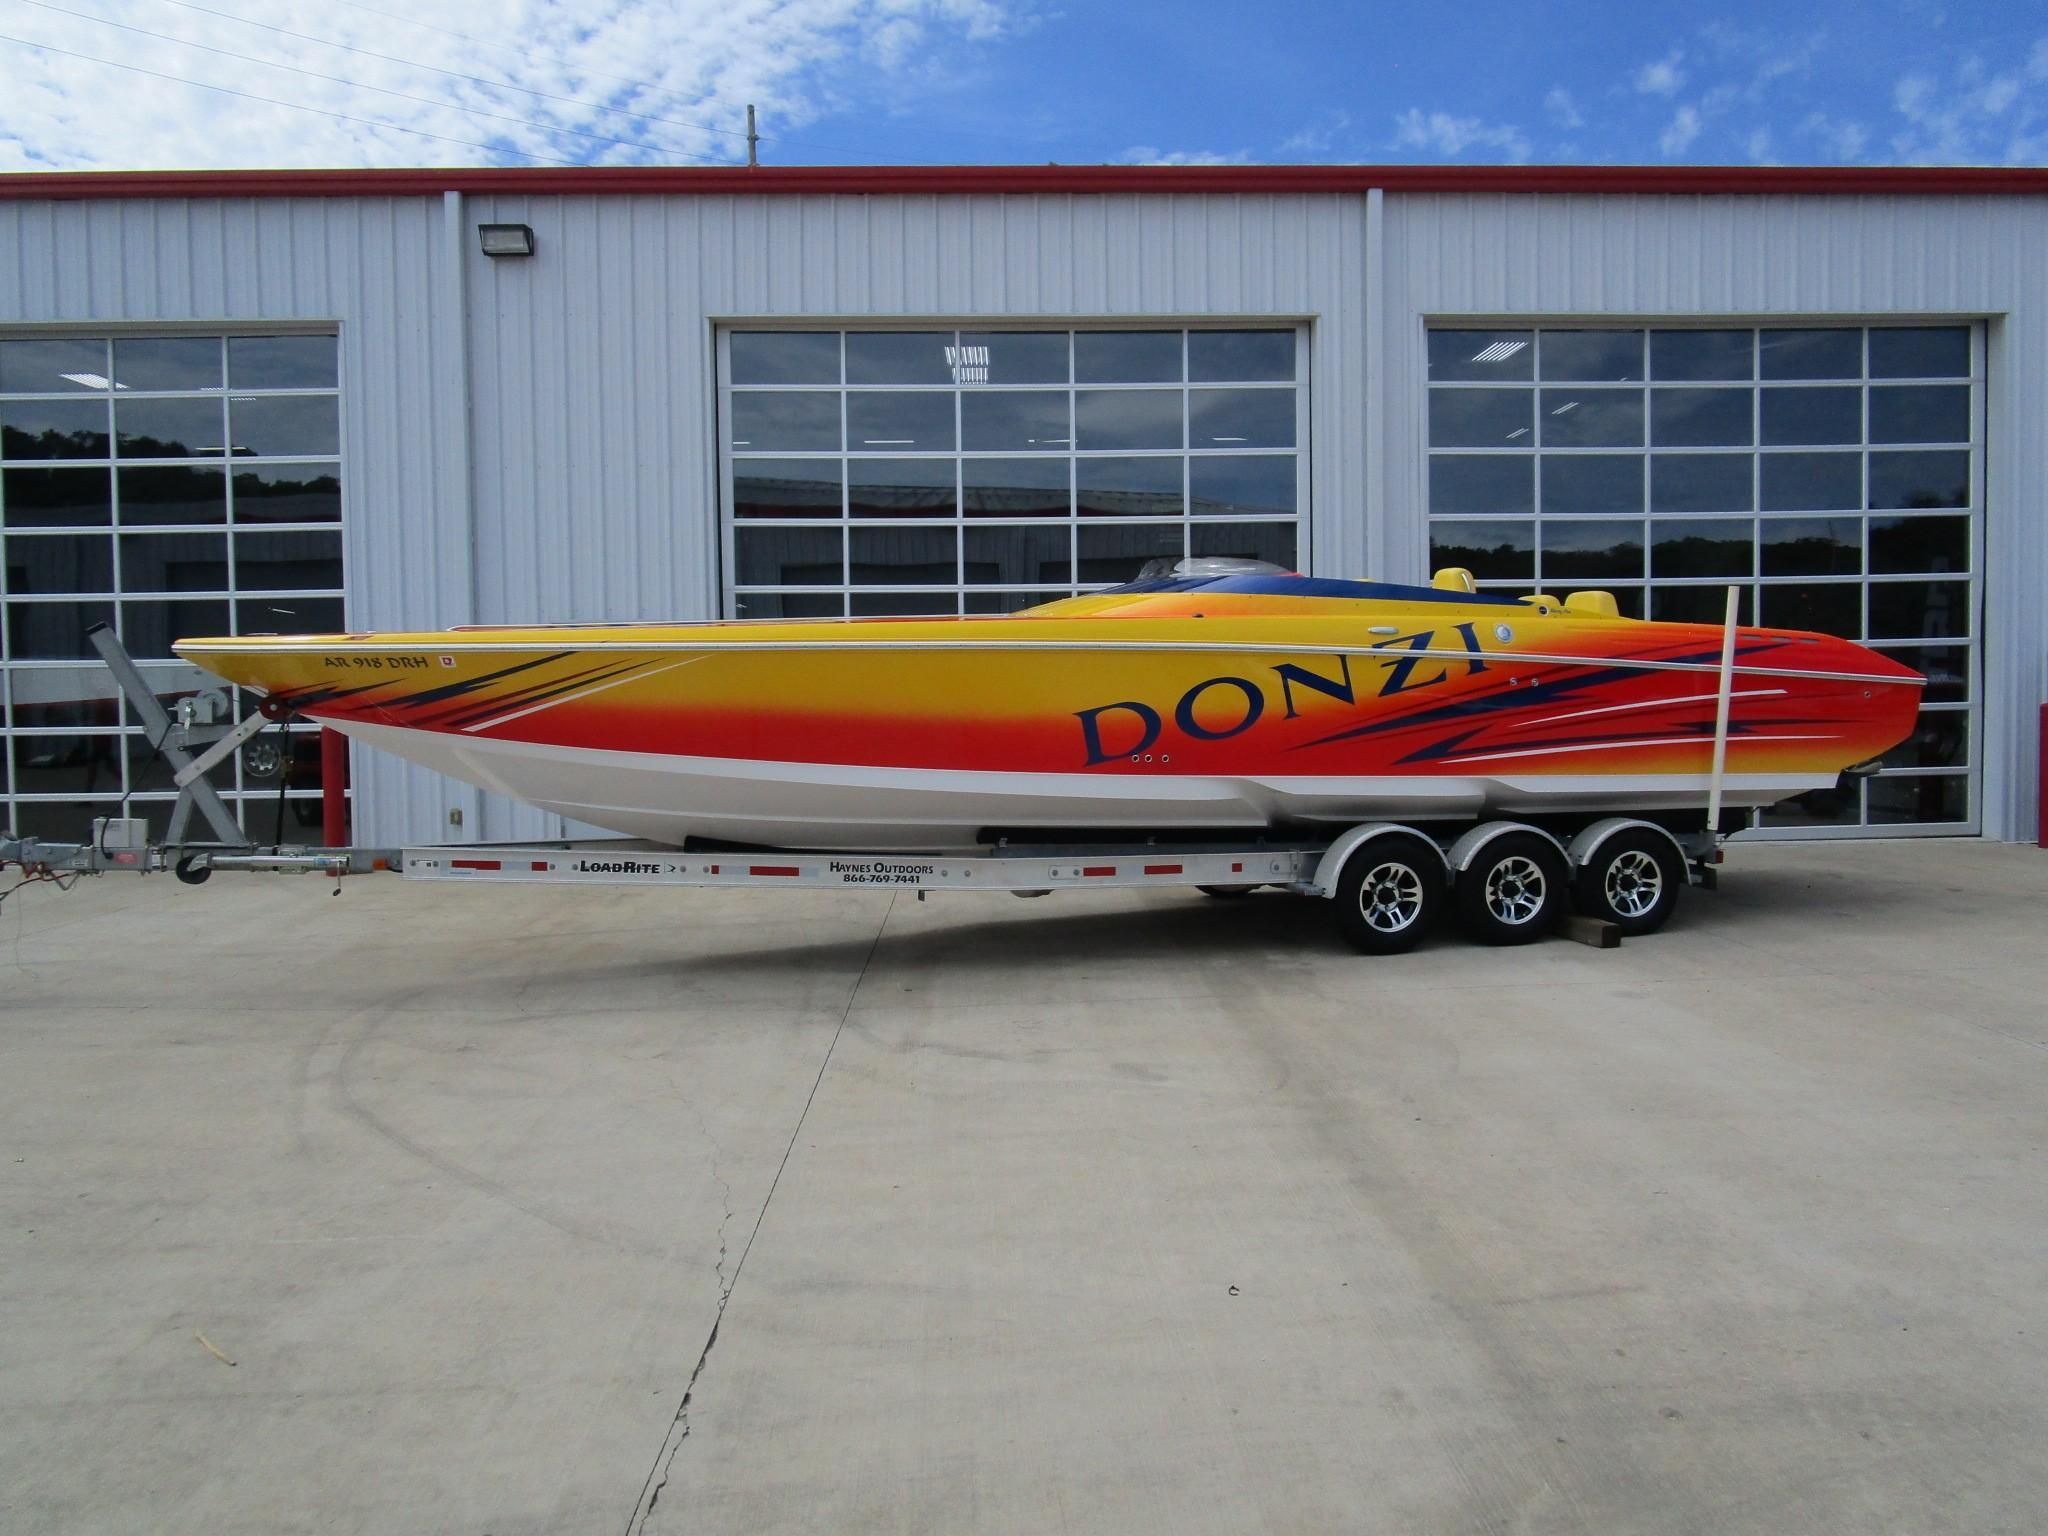 2006 Donzi 35ZR Motor båt till salu, belägen i Missouri, OSAGE BEACH.